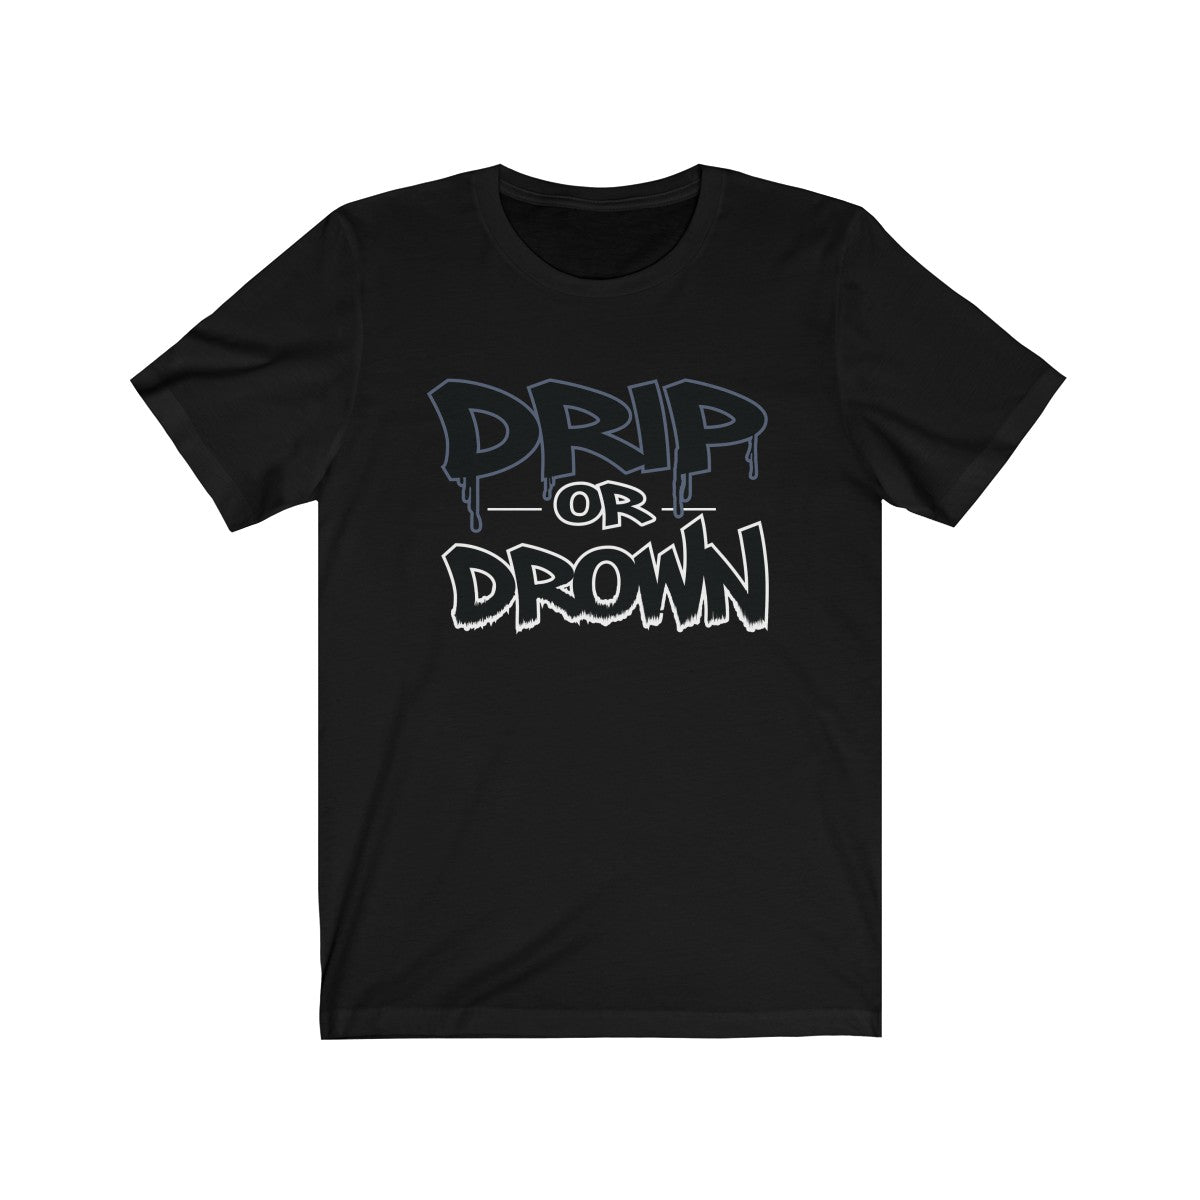 'Drip or Drown' Short Sleeve Tee